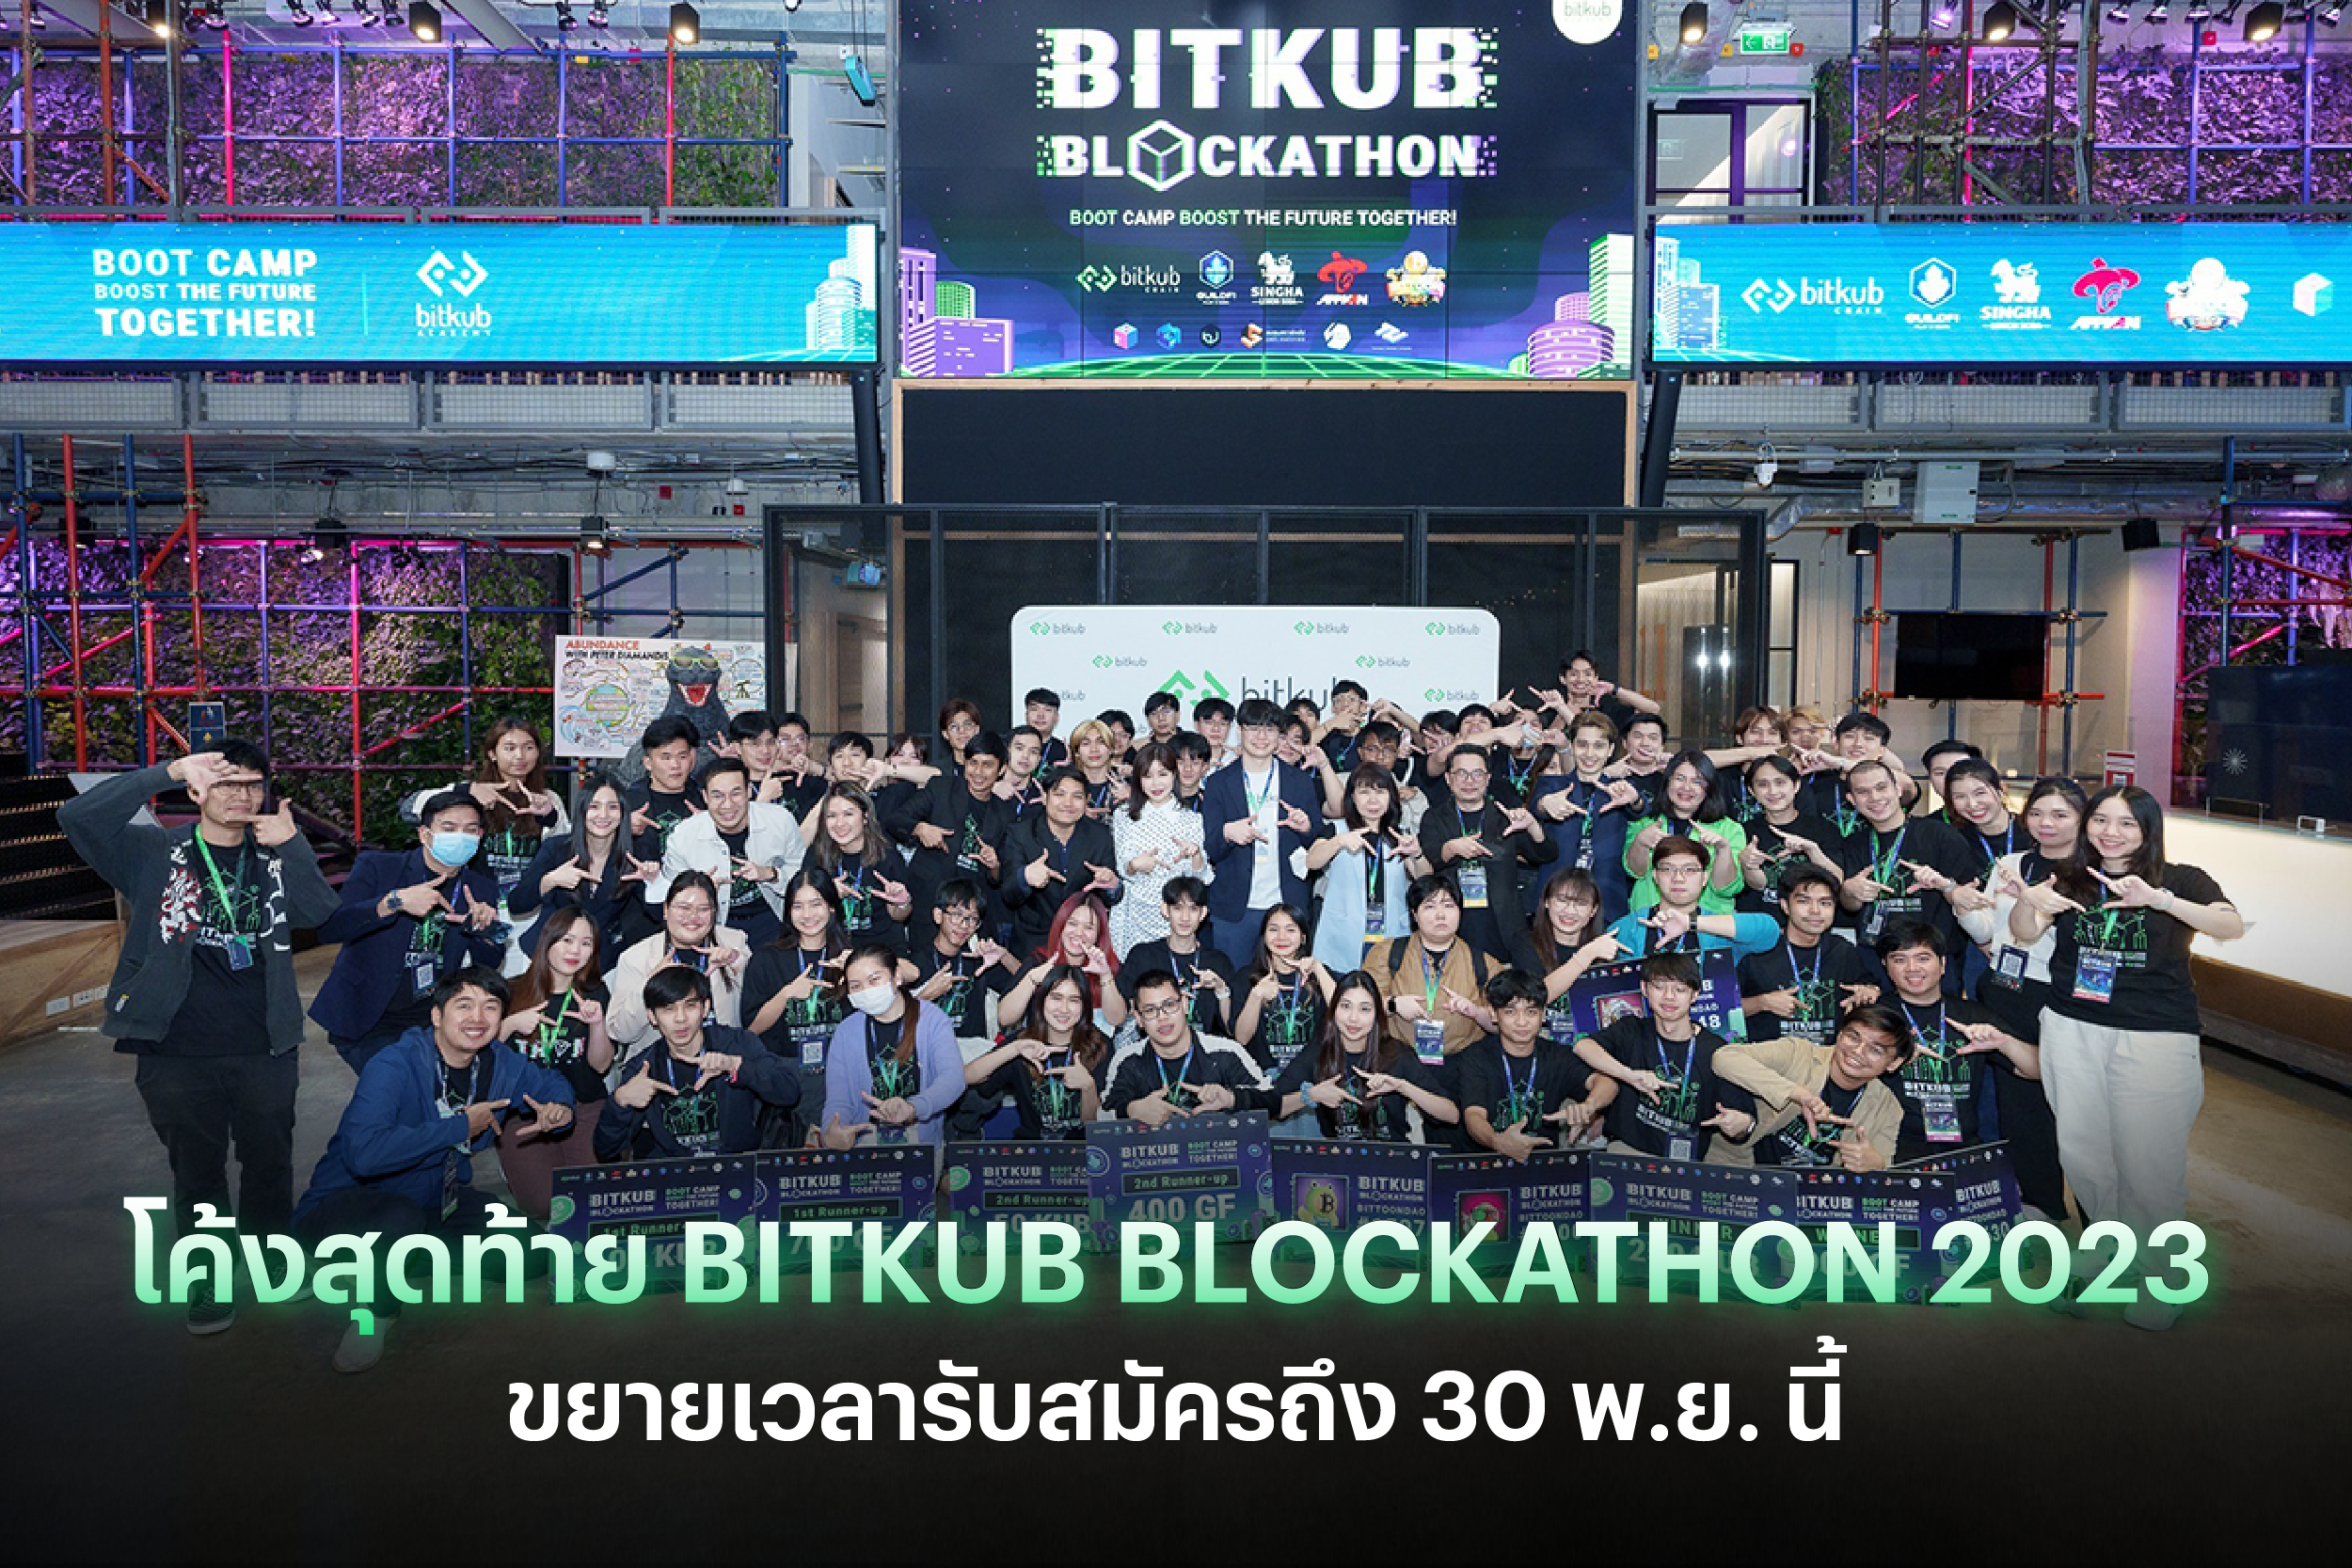 Bitkub Blockathon 2023 โค้งสุดท้าย.png